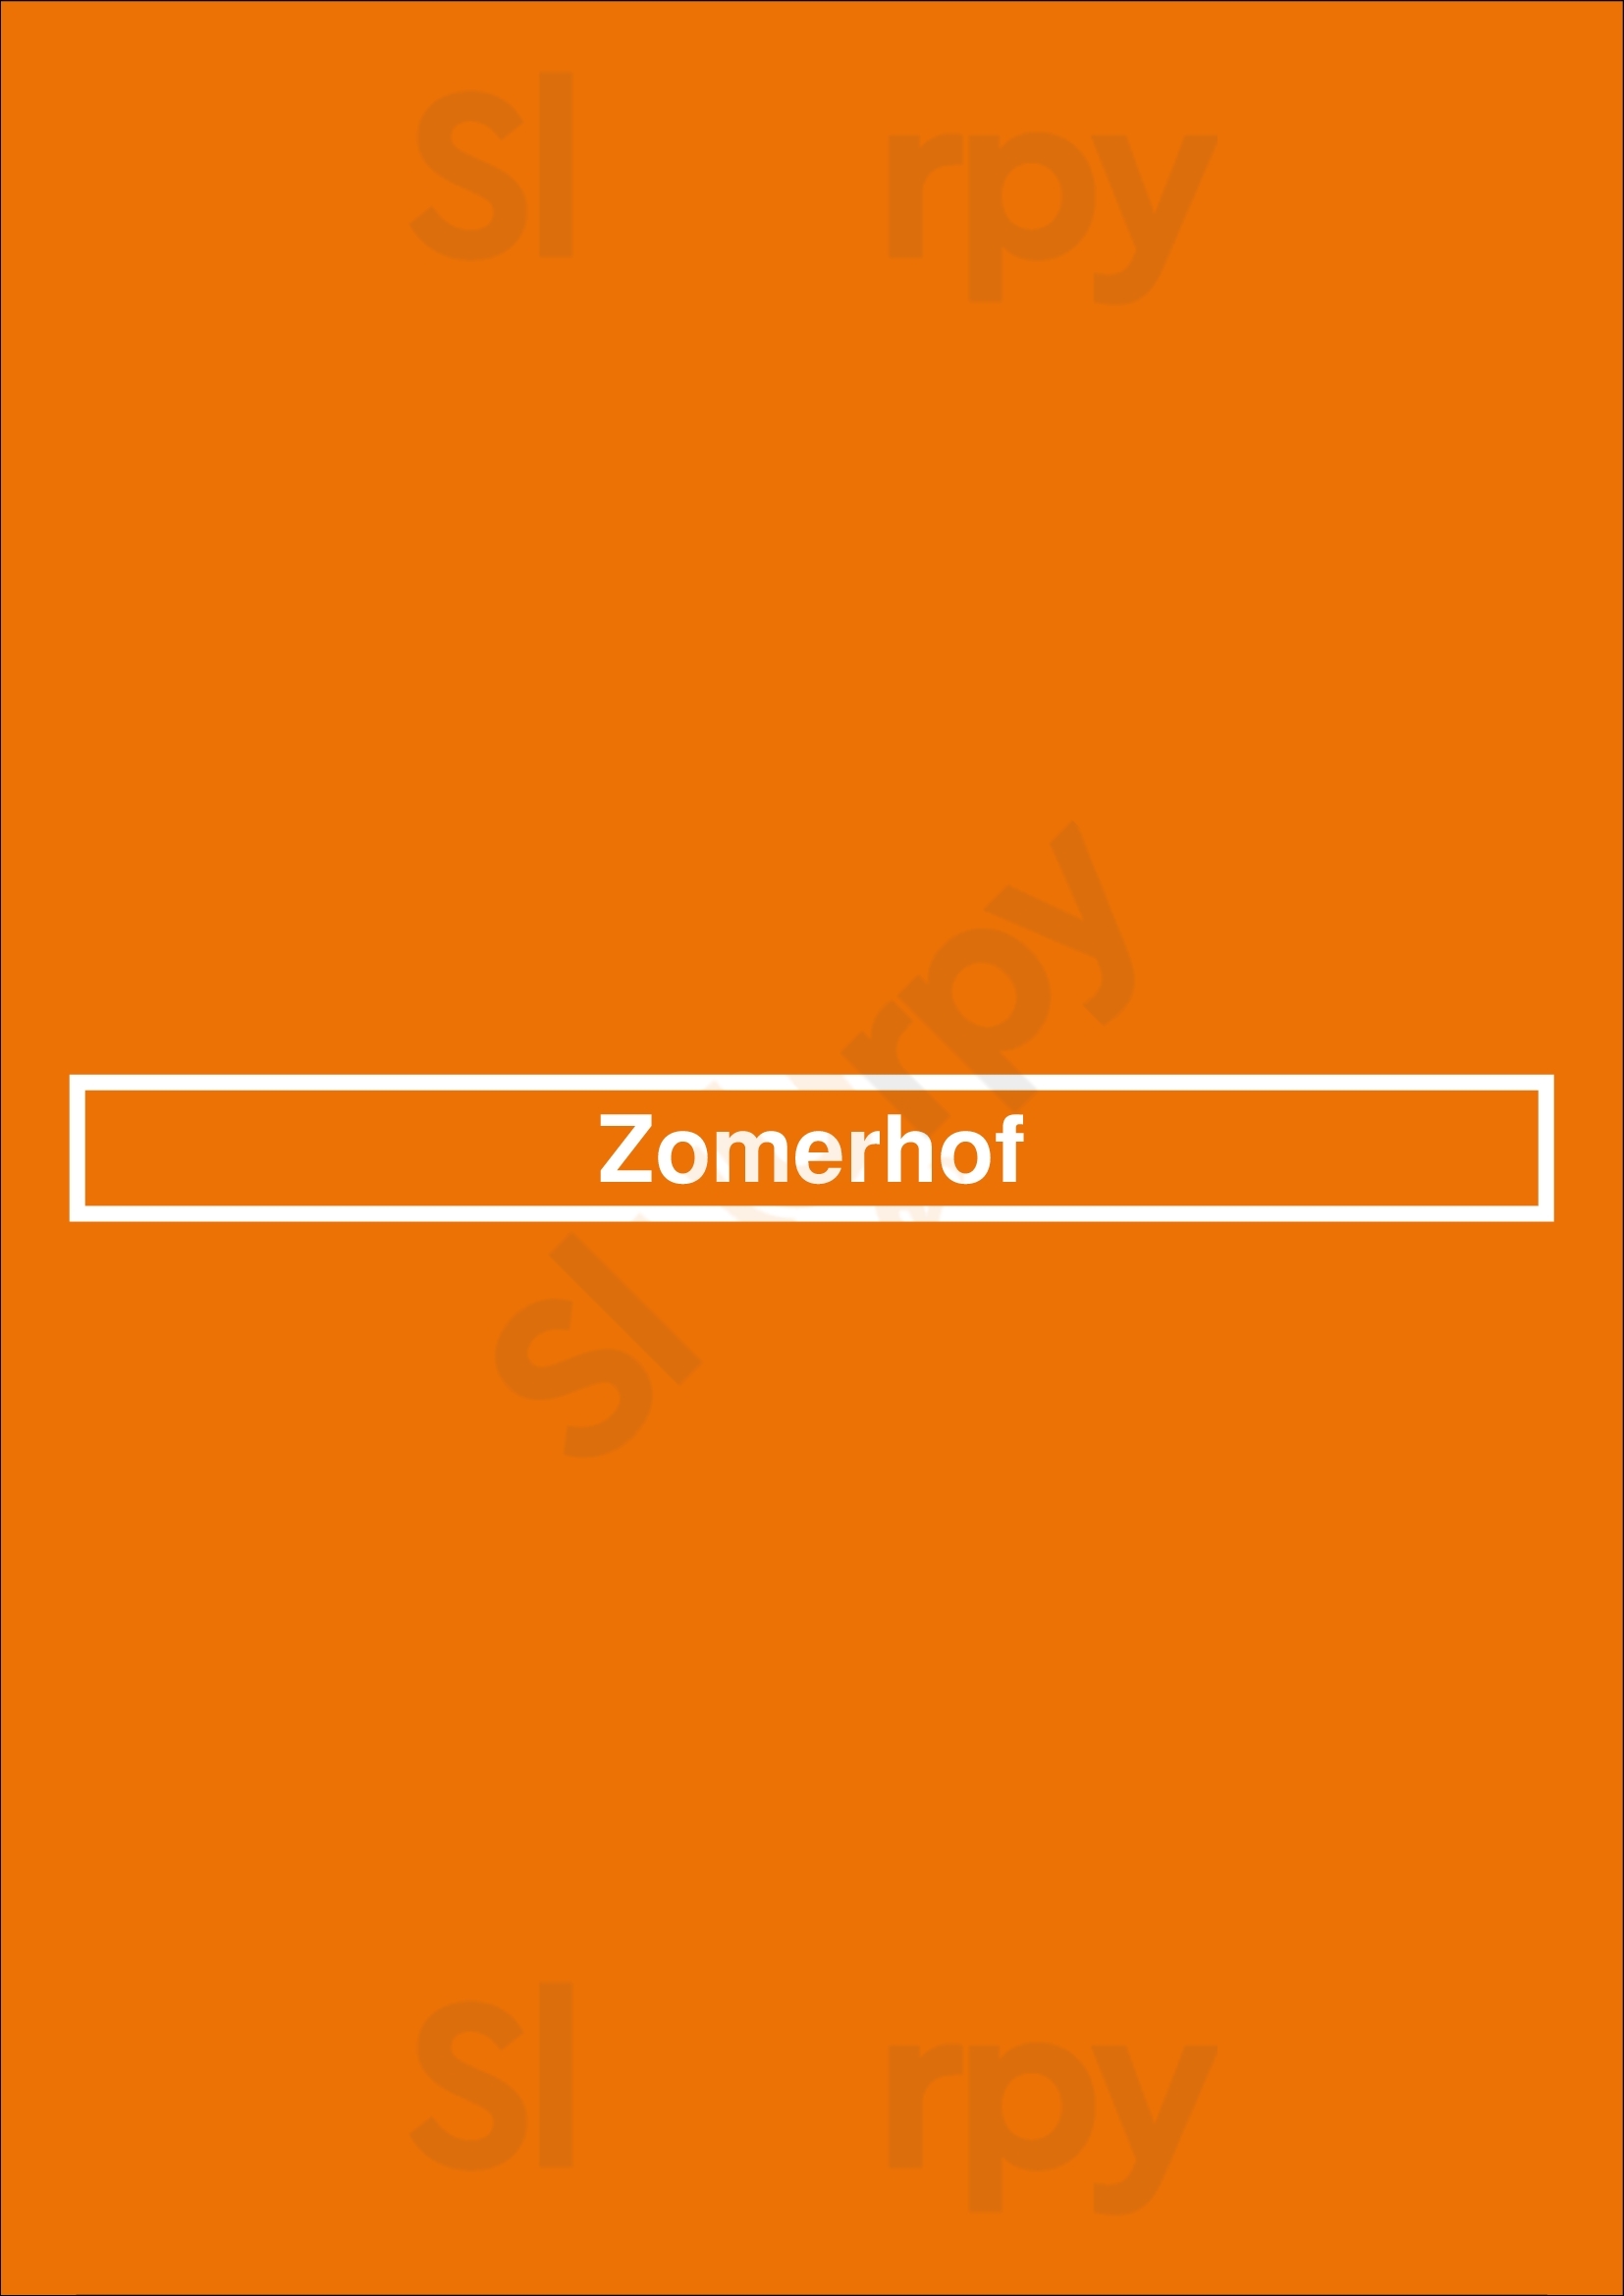 Zomerhof Valkenswaard Menu - 1